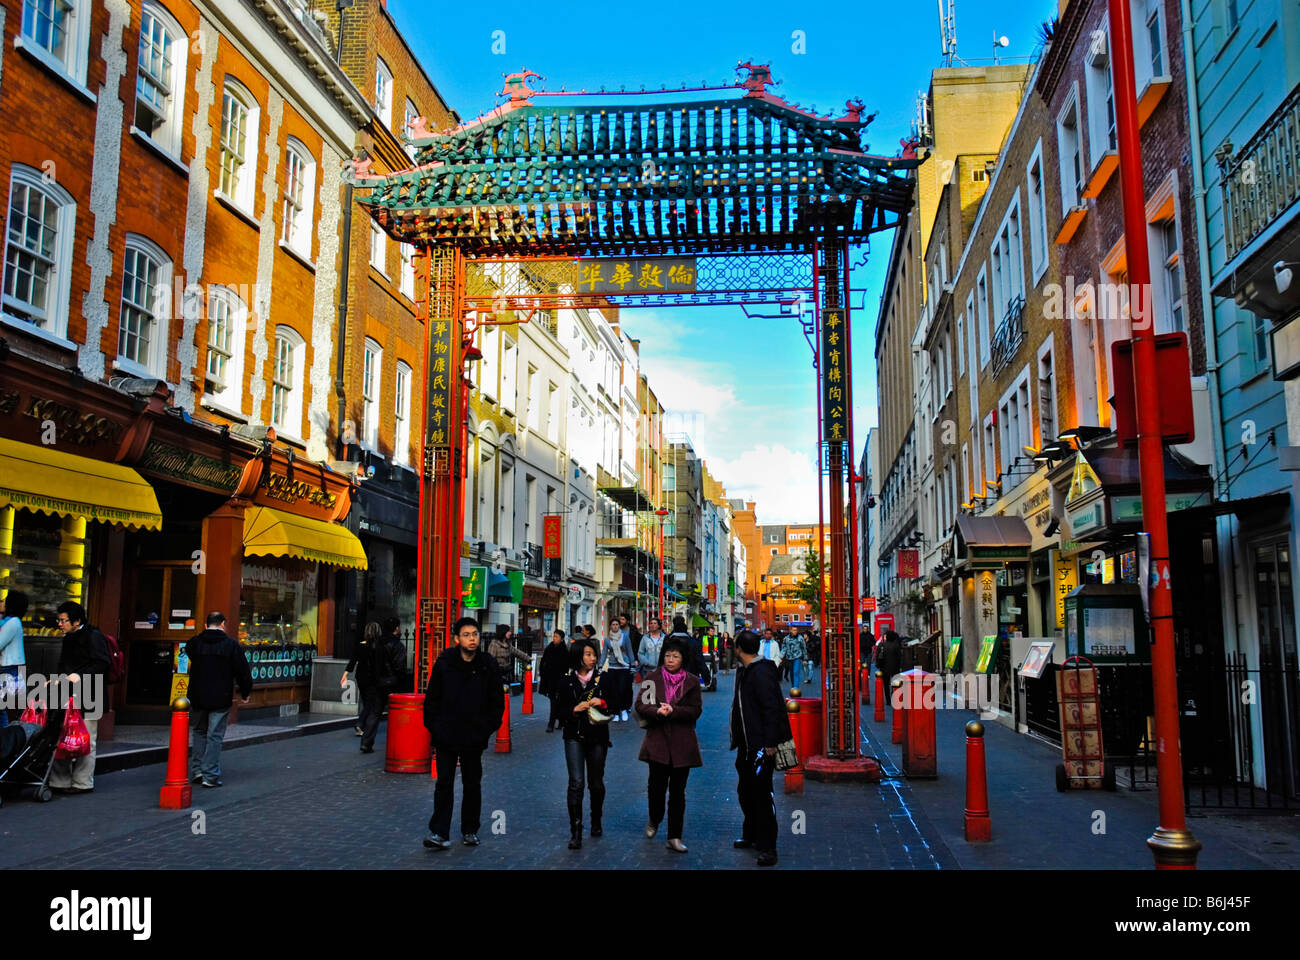 La rue Gerrard dans Chinatown London England UK Banque D'Images